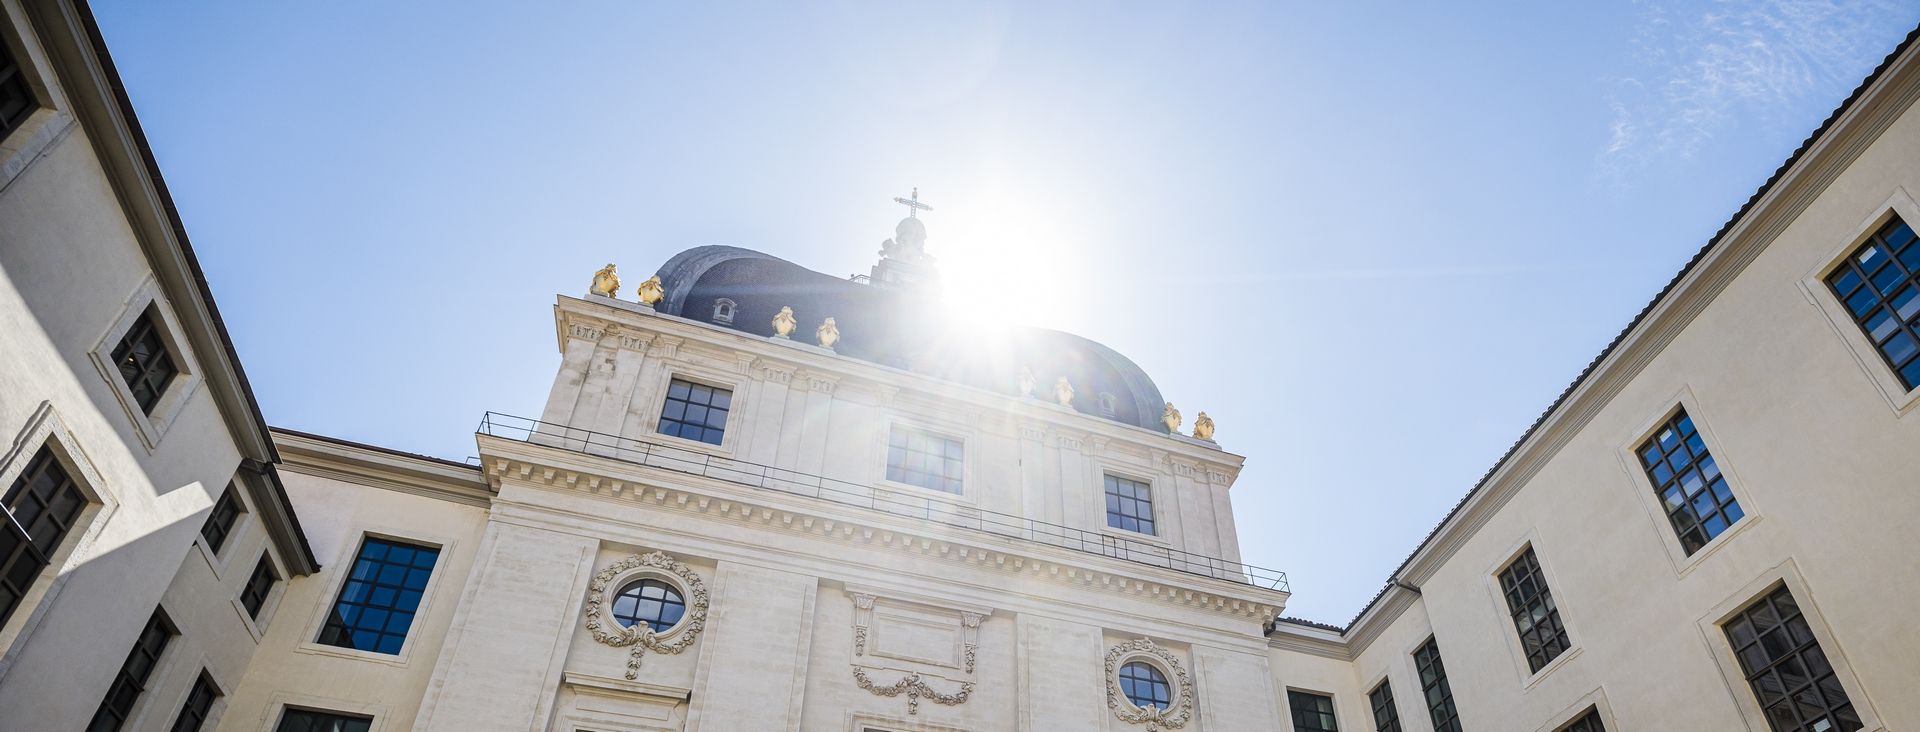 Le Grand Hôtel-Dieu de Lyon, au fil de l’Histoire